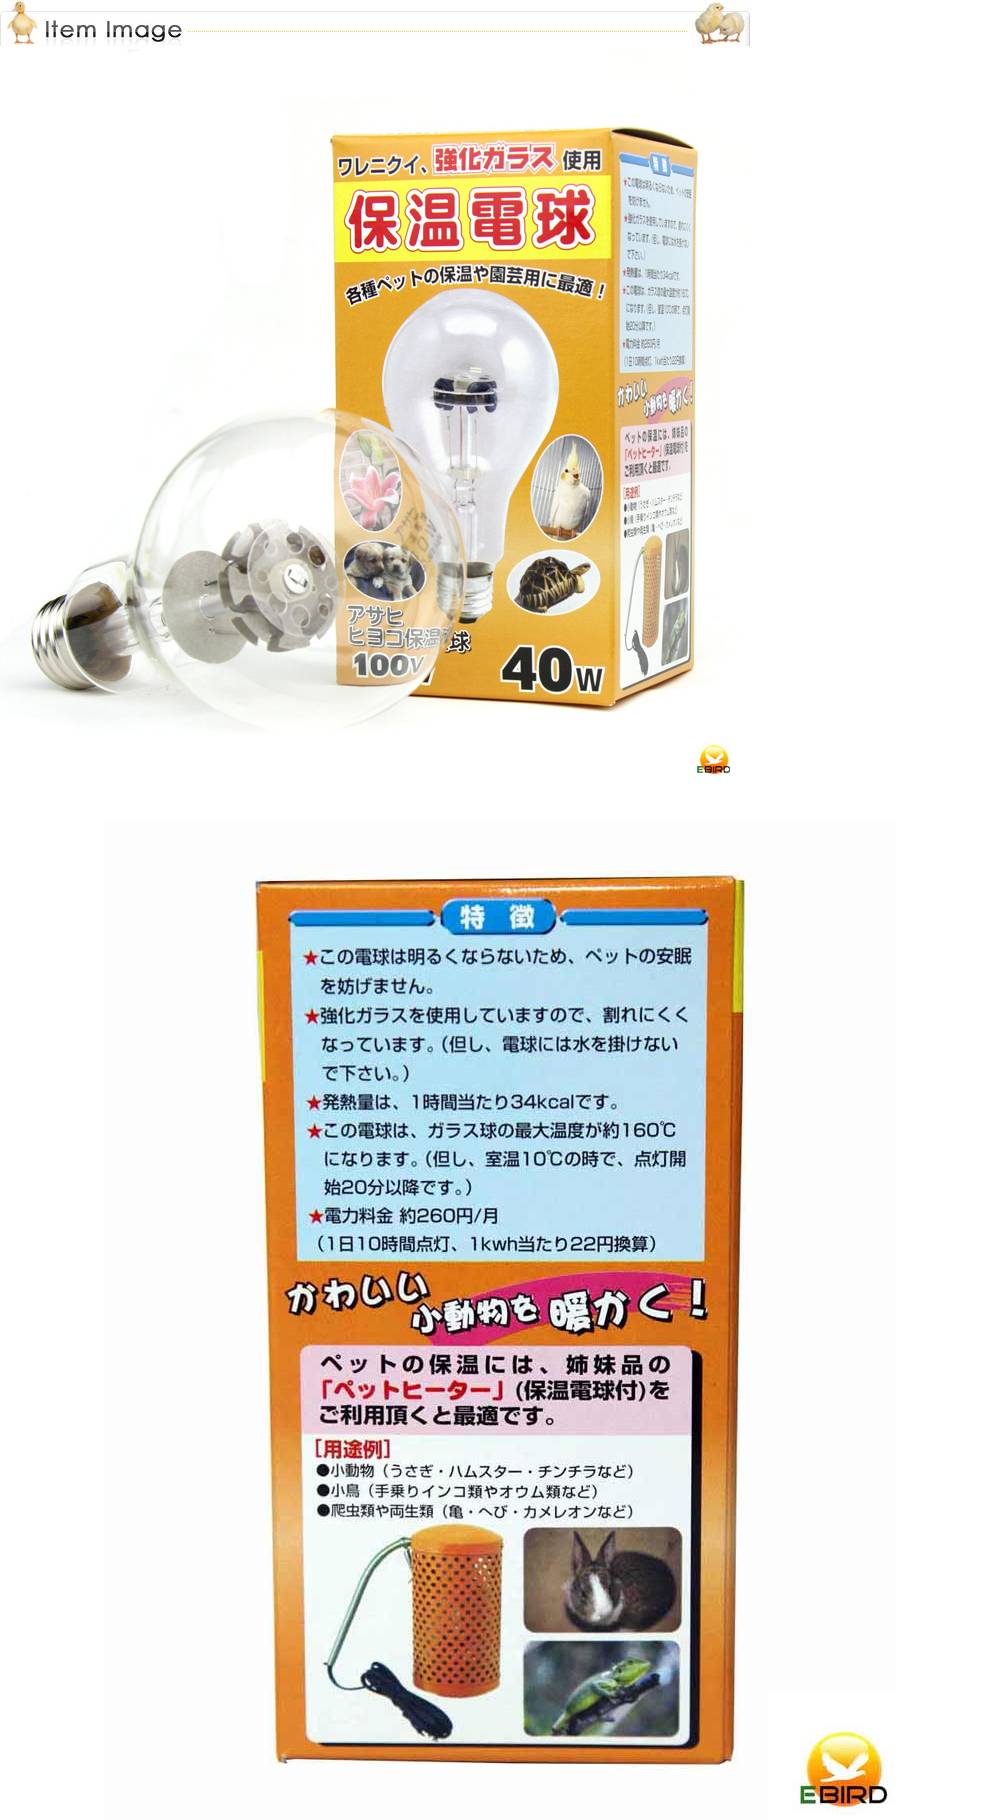 484円 割引も実施中 保温電球保温電球 ヒヨコ電球 100W 硬質ガラス